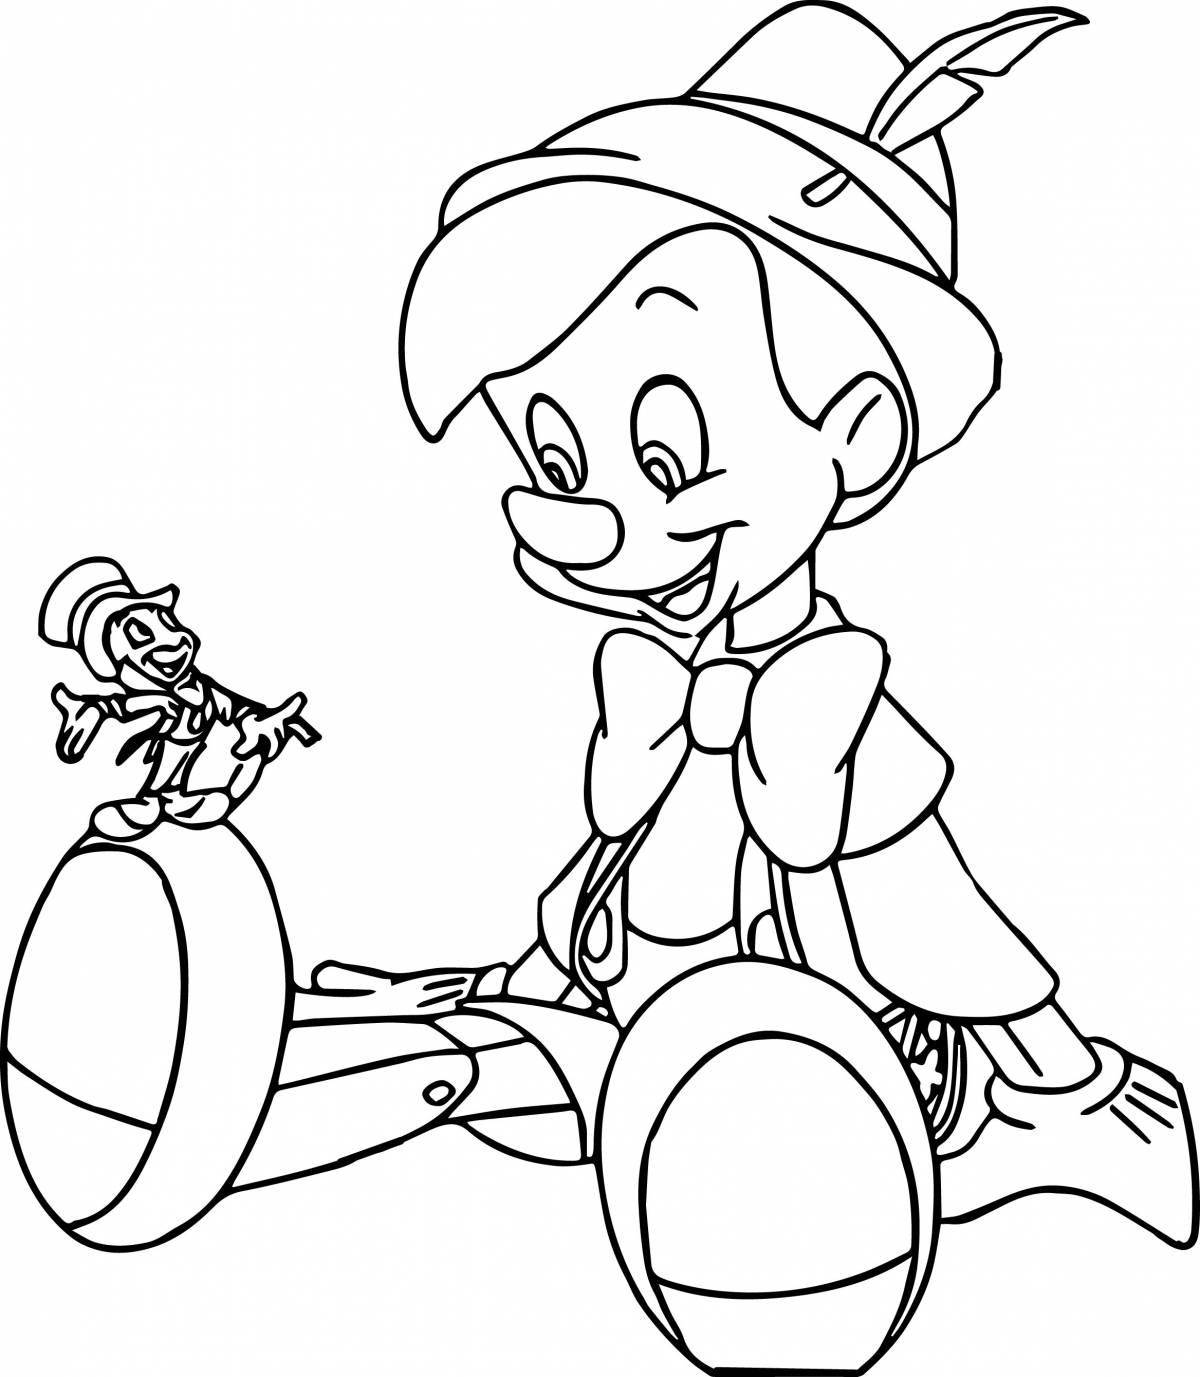 Adorable Pinocchio coloring book